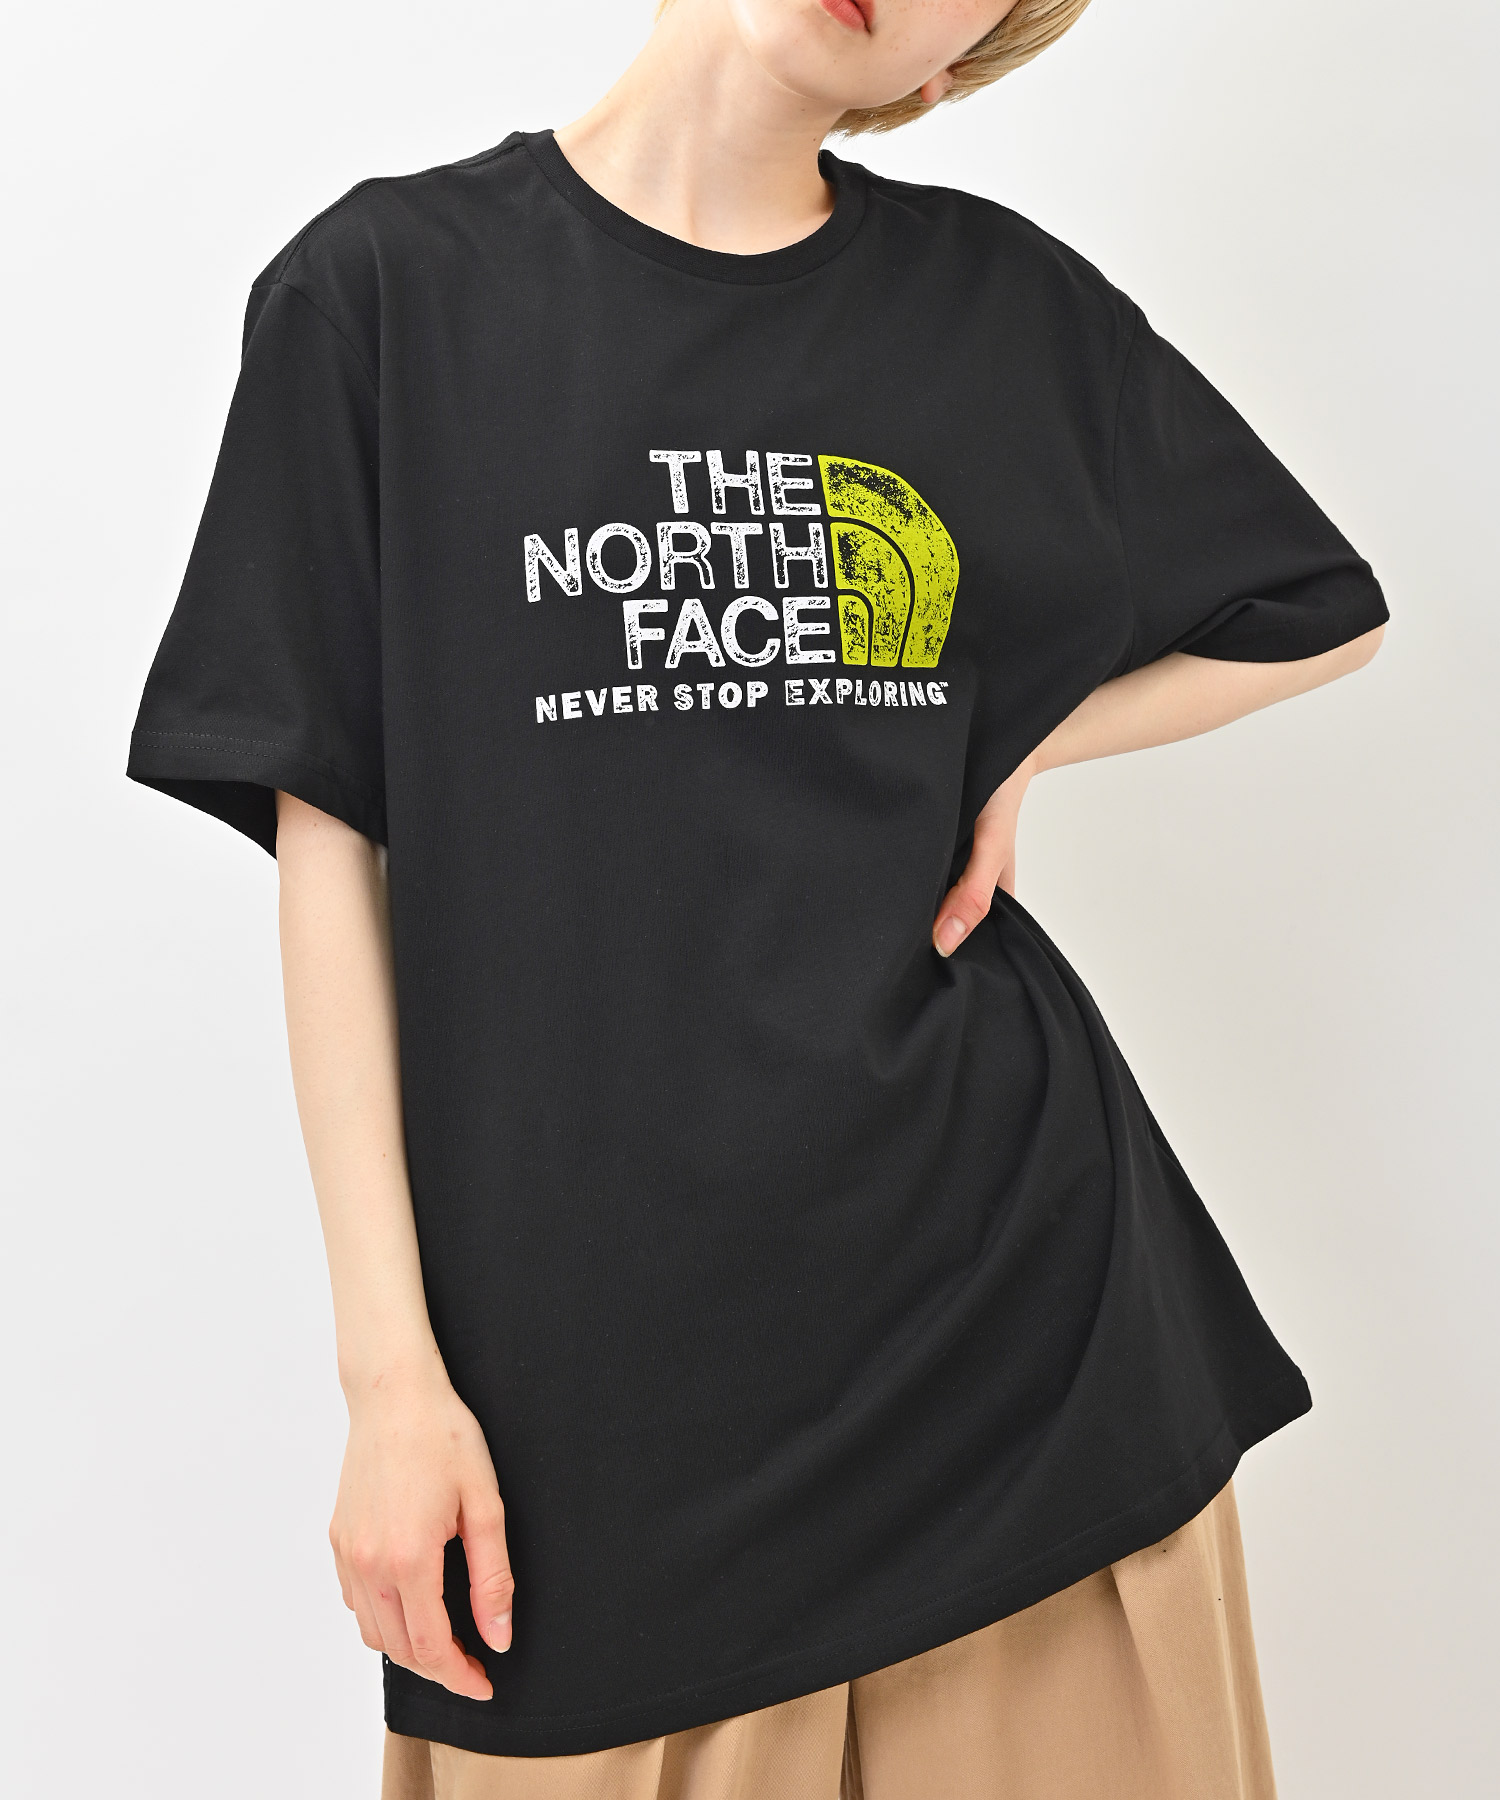 THE NORTH FACE ノースフェイス RUST 2 TEE 半袖Tシャツ(503197490 